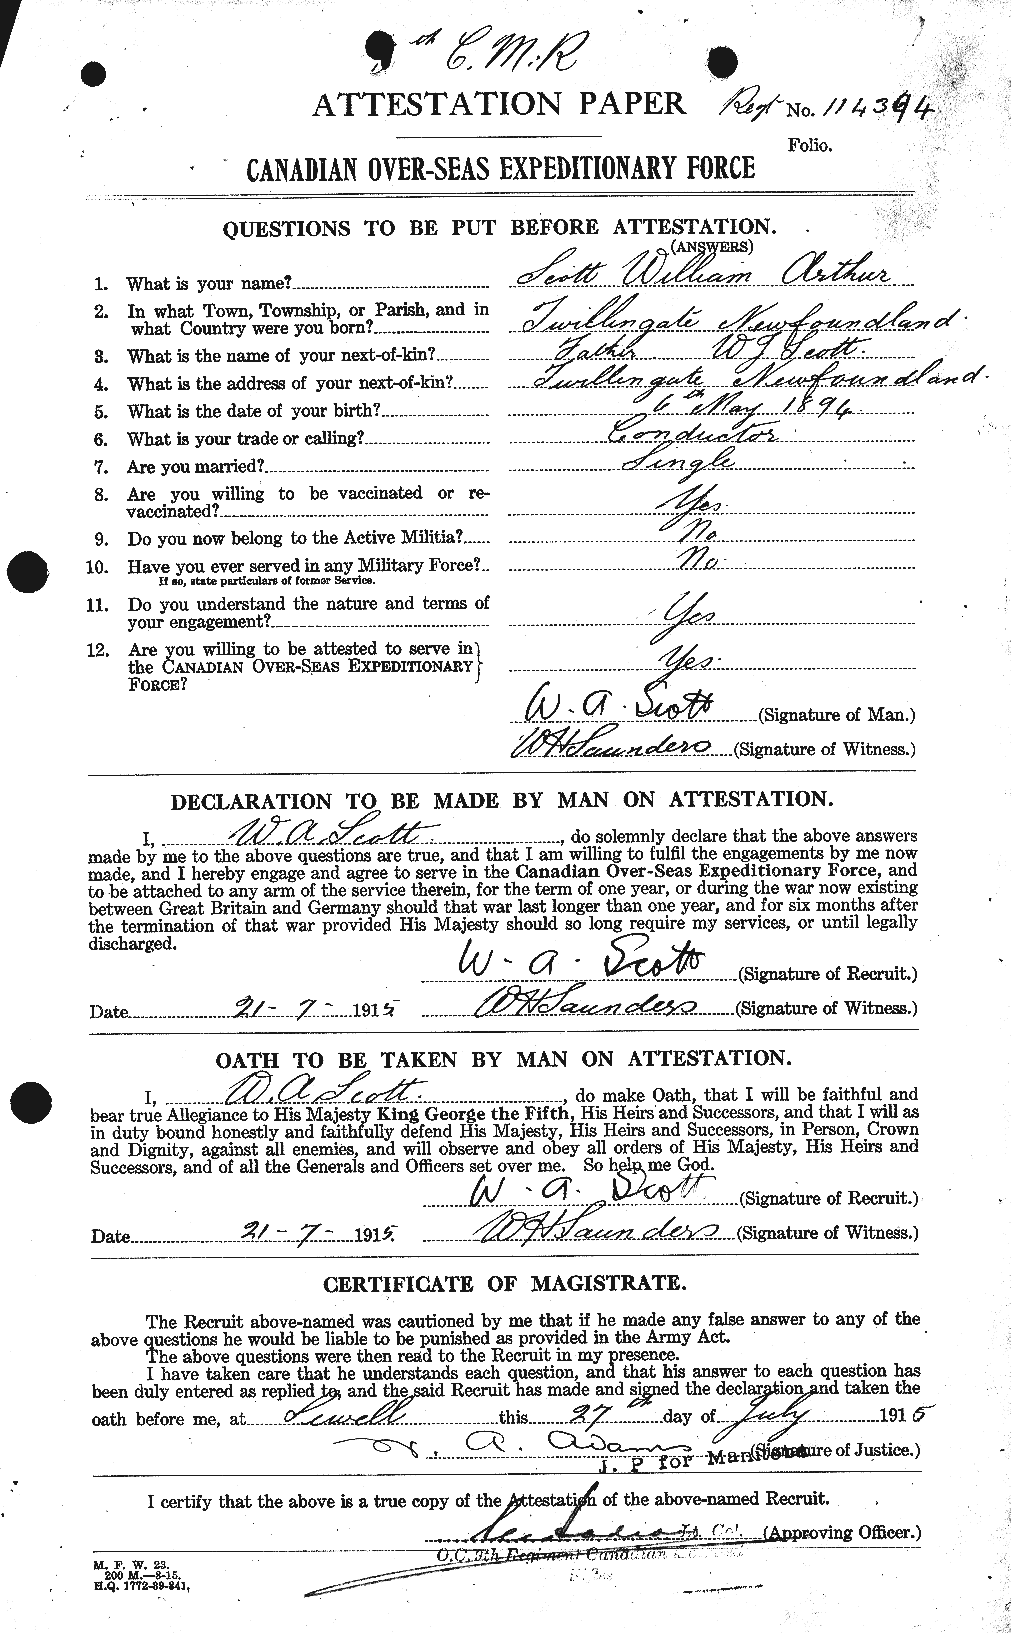 Dossiers du Personnel de la Première Guerre mondiale - CEC 087327a